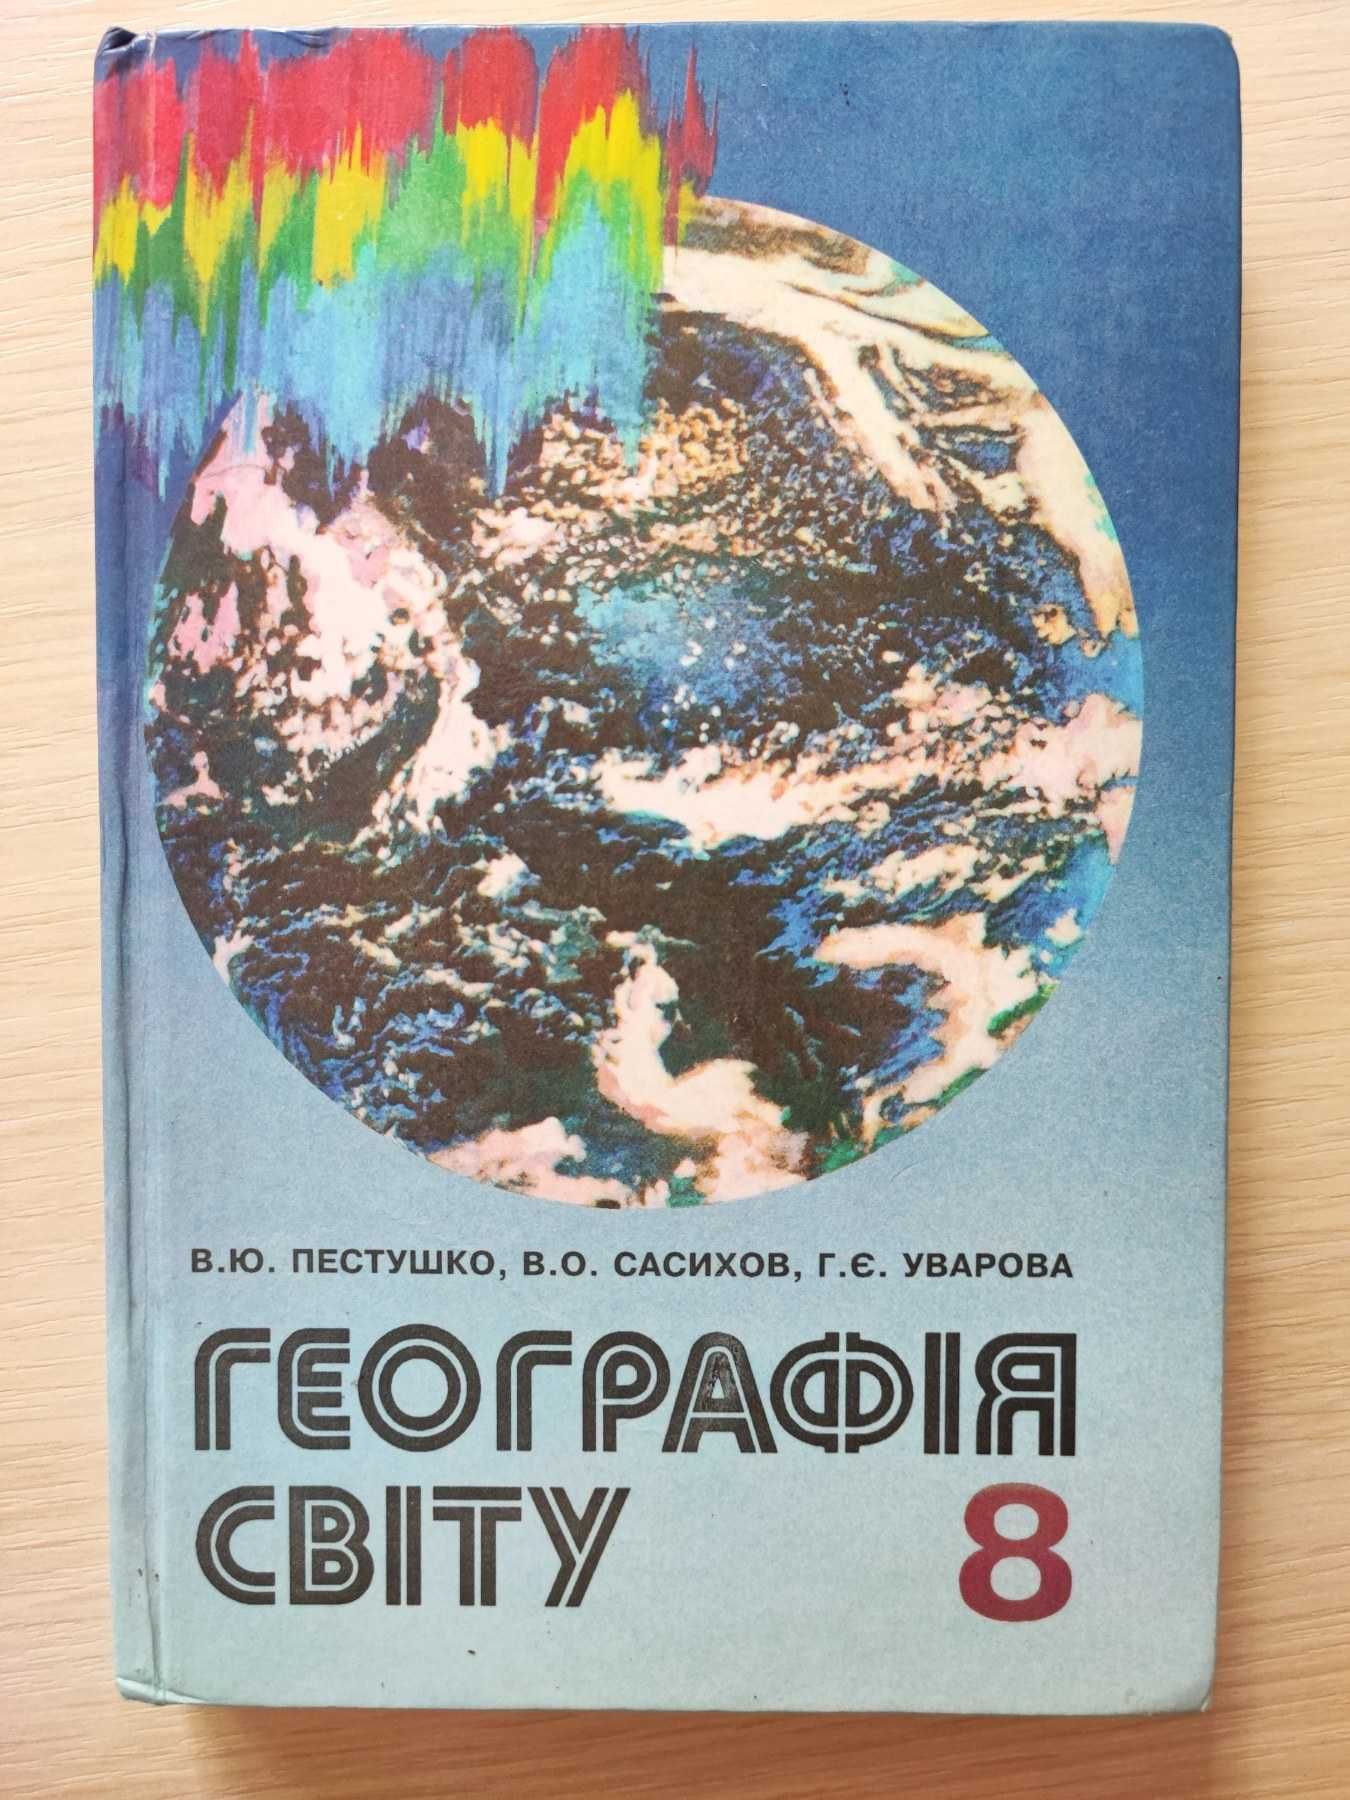 Підручник Географія світу 8 клас, Пестушко В.Ю. 1997 рік